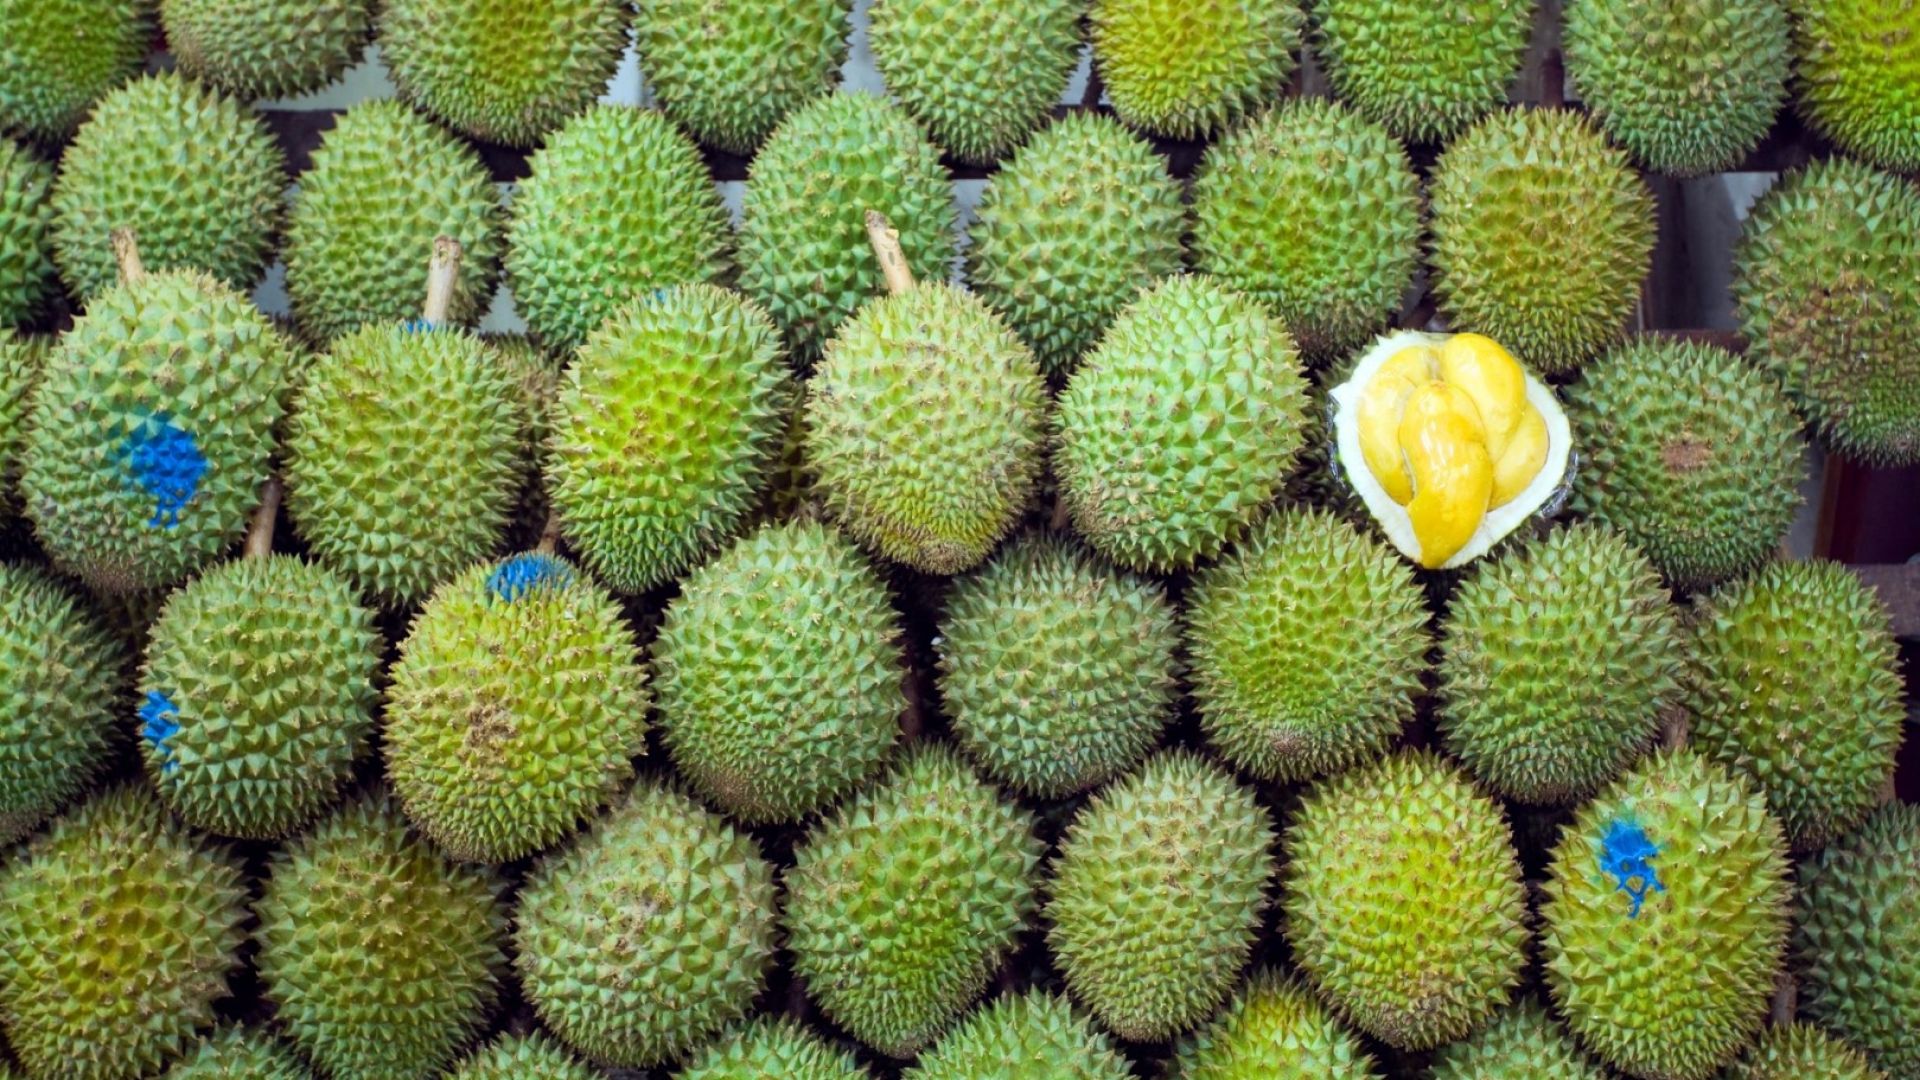 Яли ли сте дуриан - тропическия плод, който мирише на умряло?